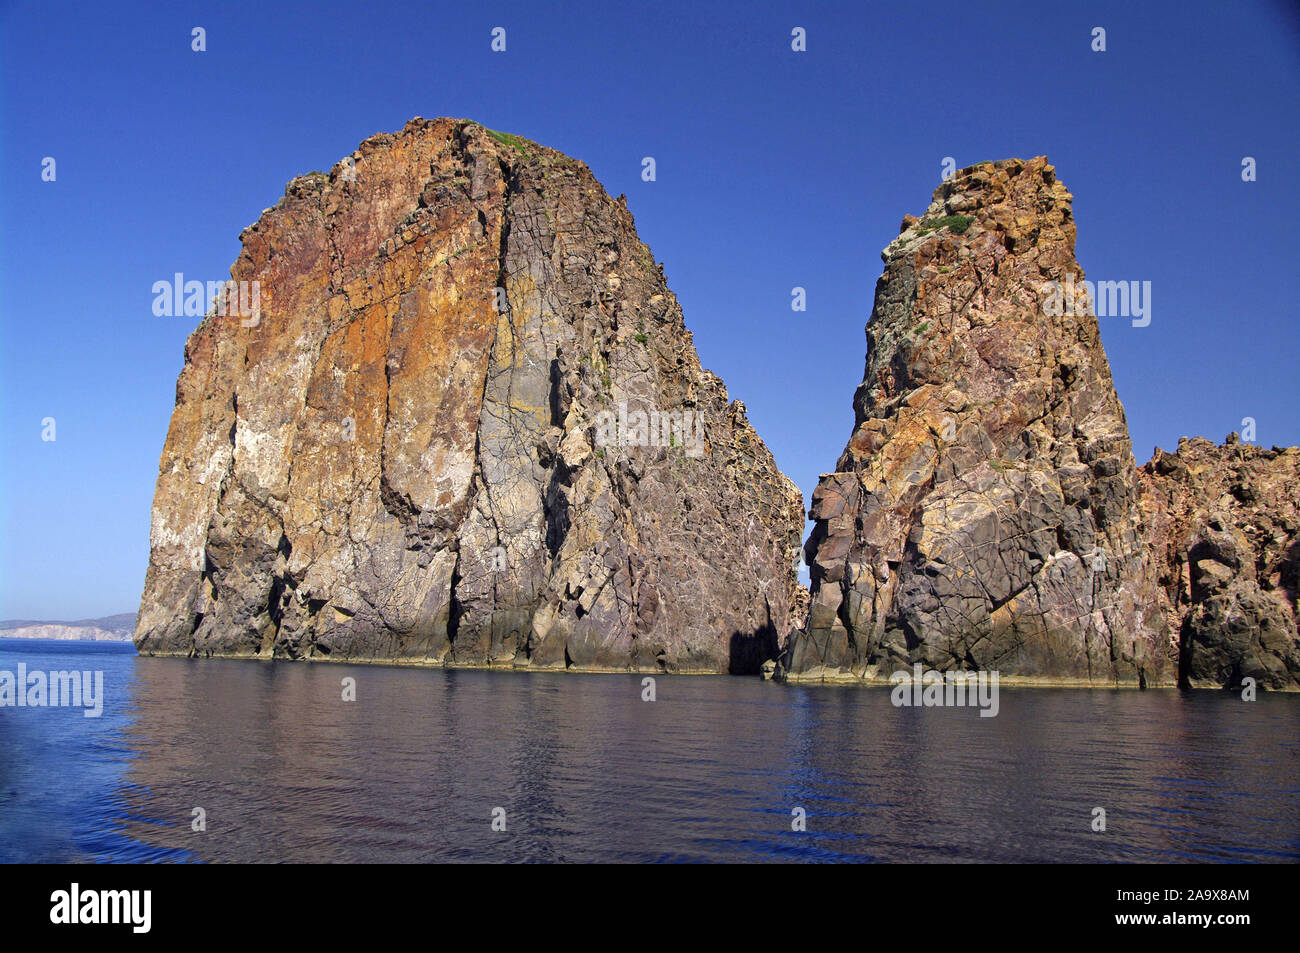 Europa, Griechenland, Kykladen, Steinformation vor Milos Stock Photo